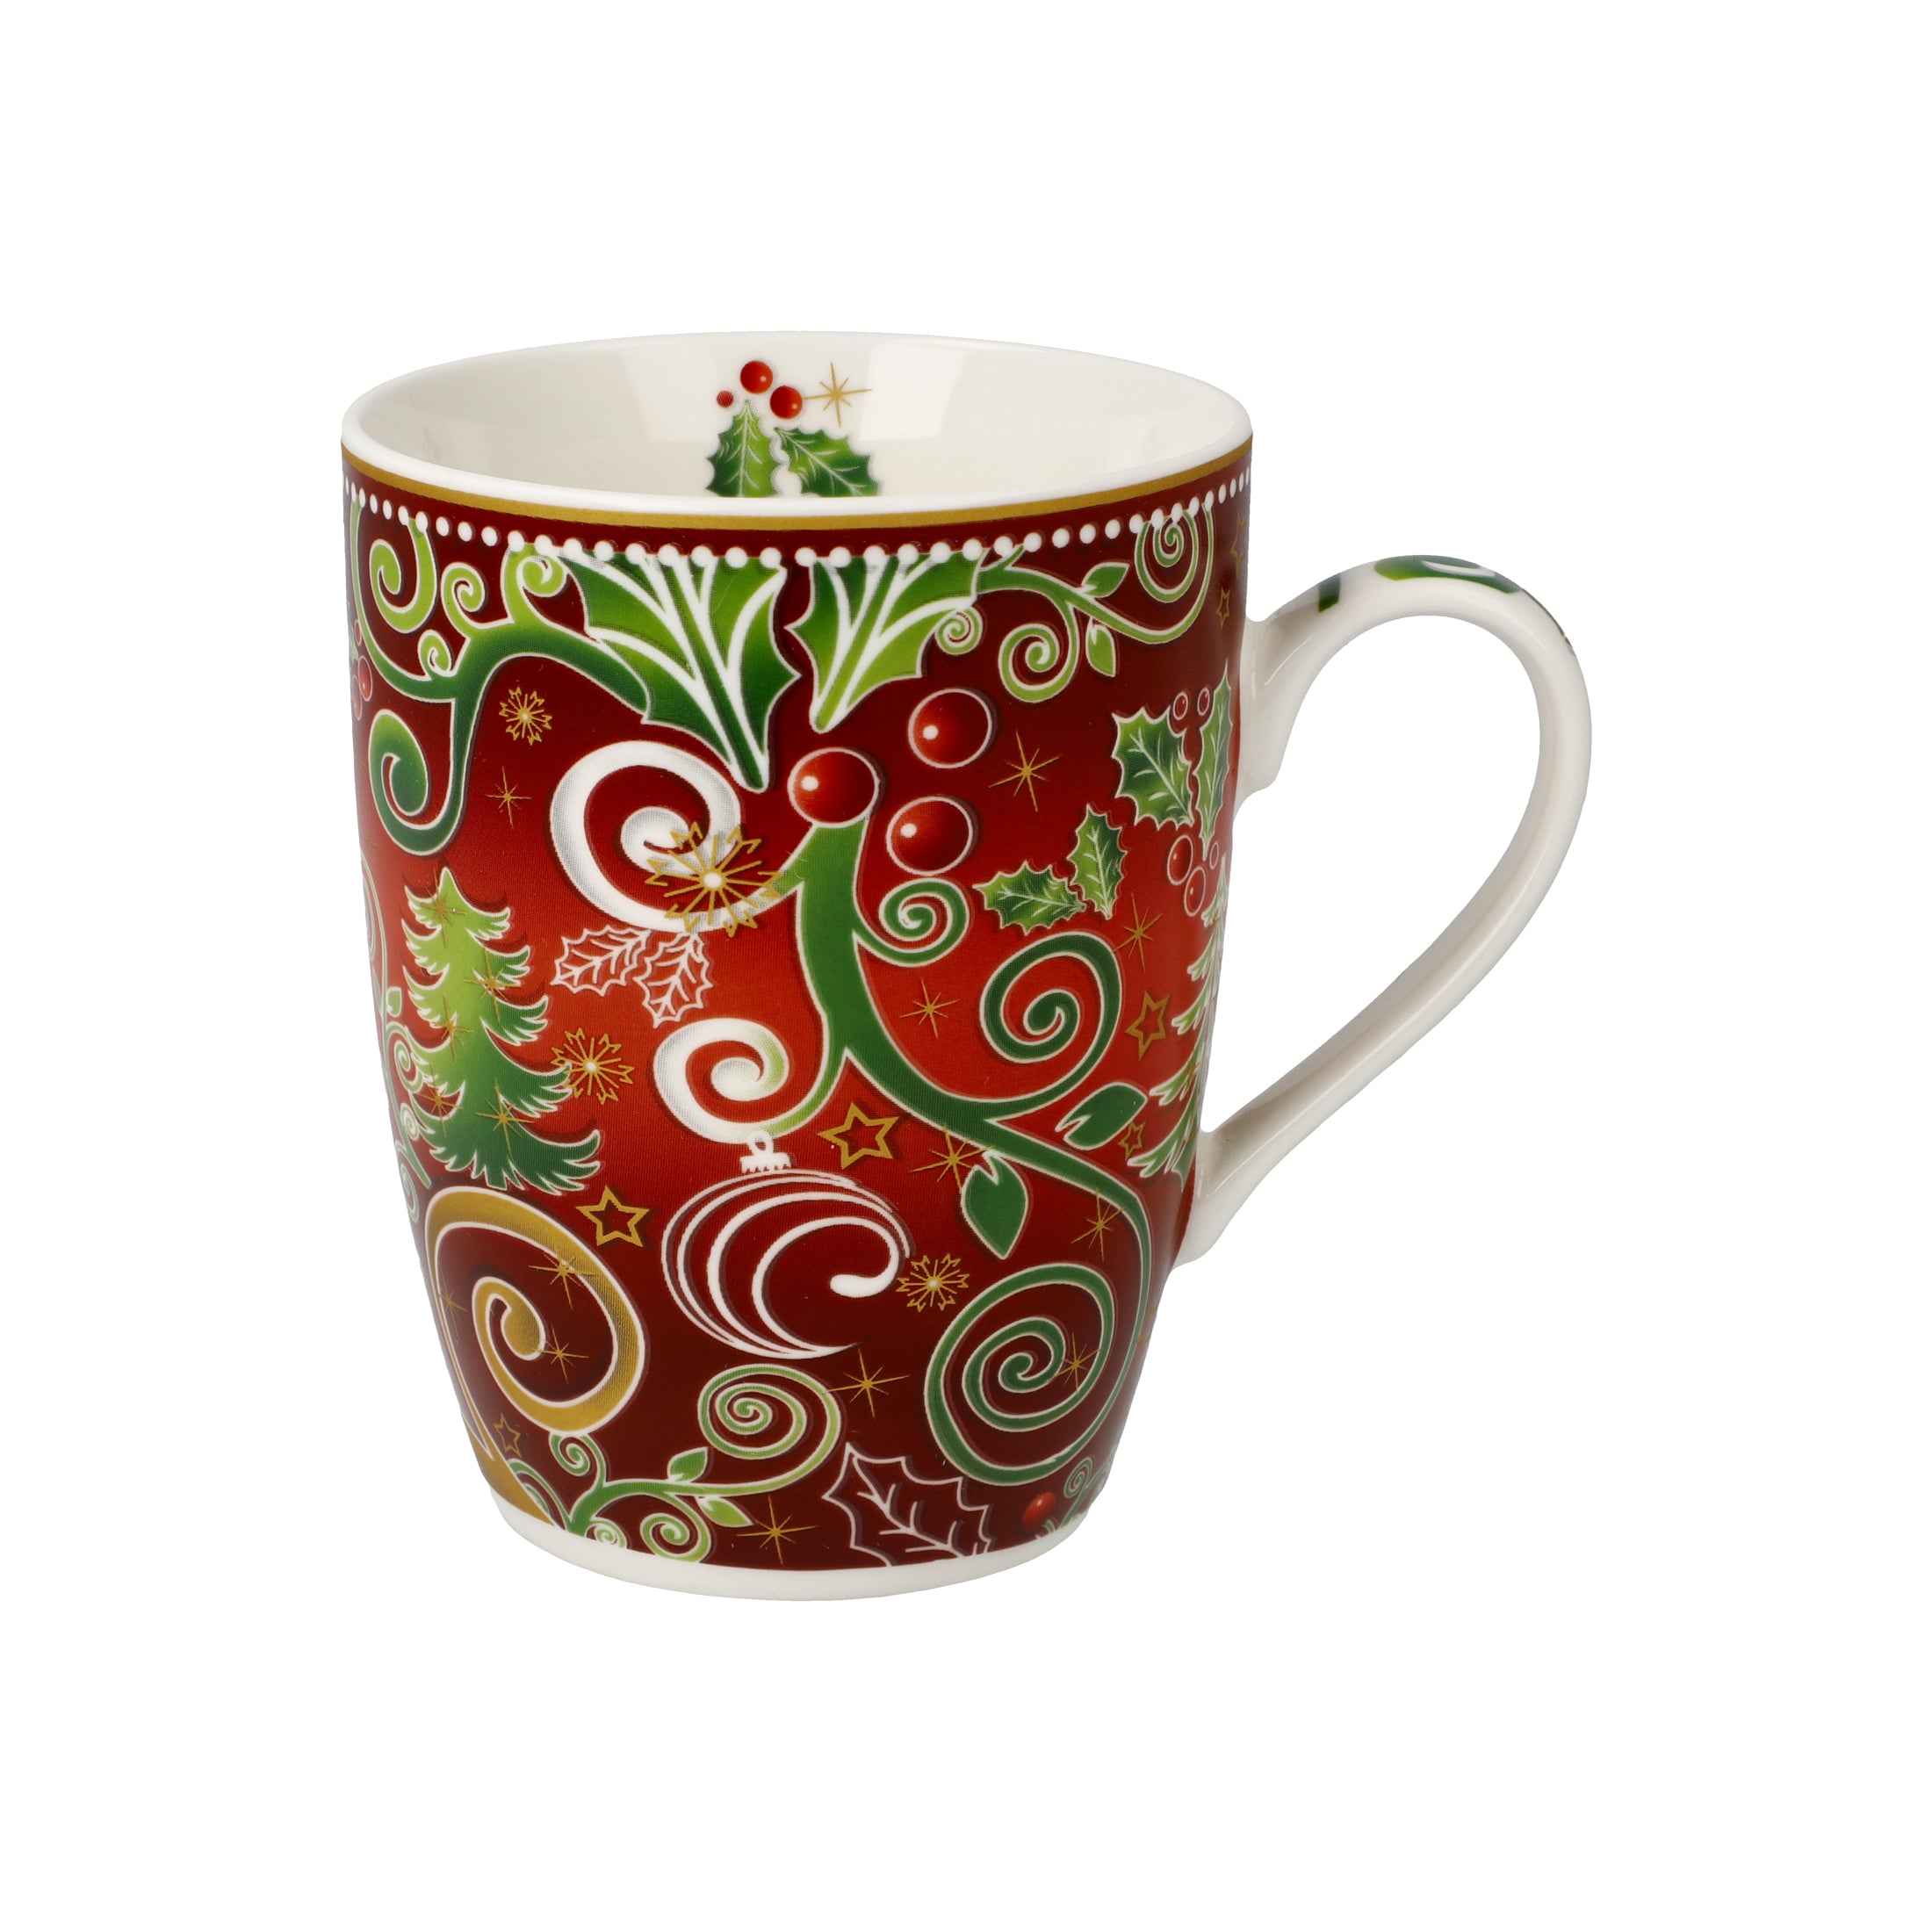 PALAIS ROYAL Festlicher Kaffeebecher rot-grün by Goebel